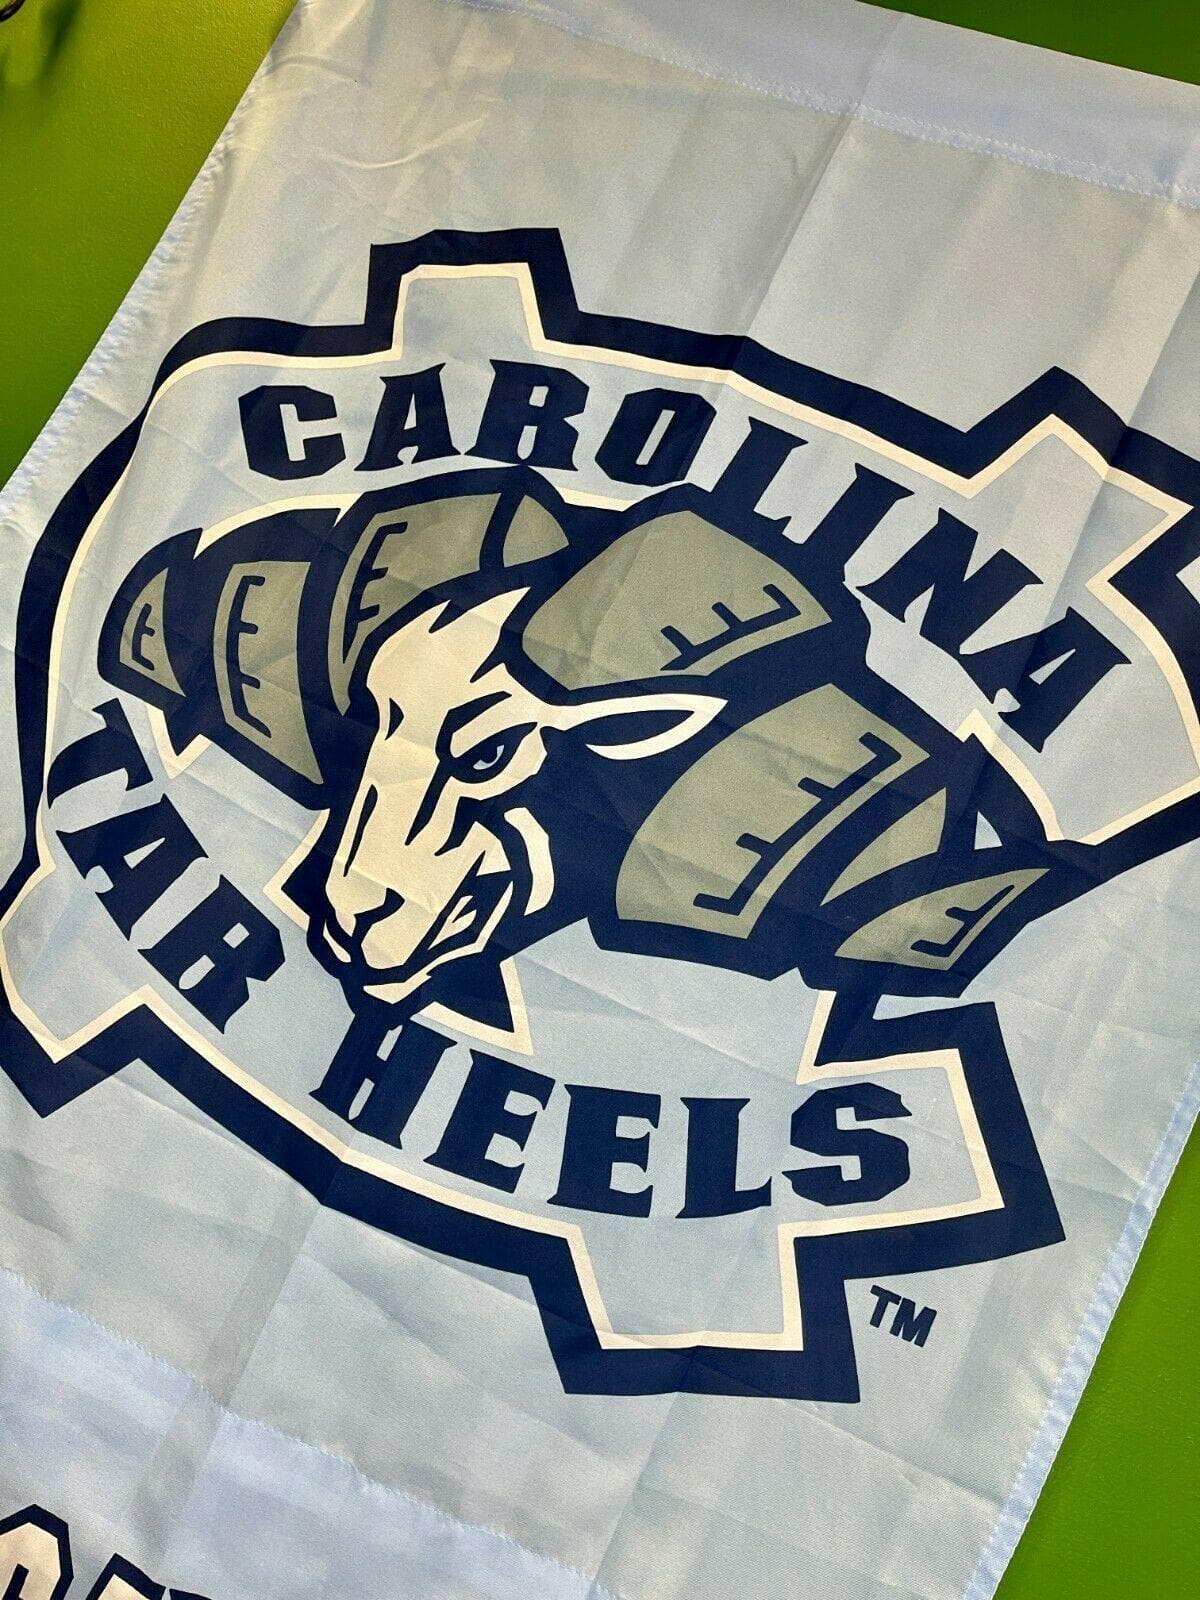 NCAA North Carolina Tar Heels Indoor Flag-Vertical Banner